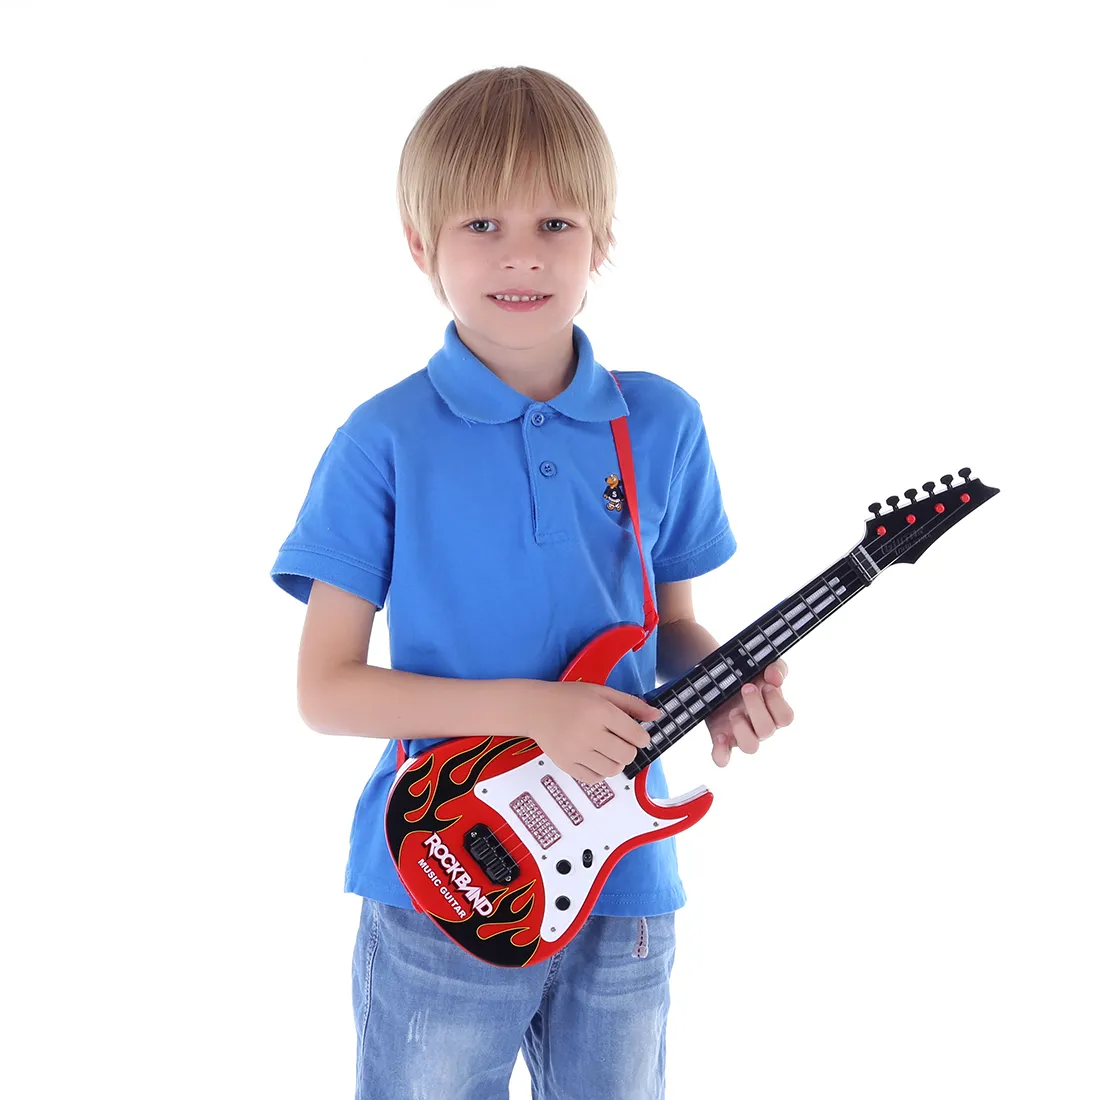 Hohe Qualität Hot 4 Saiten Musik E-gitarre Kinder Musikinstrumente Lernspielzeug für Kinder Weihnachten Neujahr Geschenke LJ200907